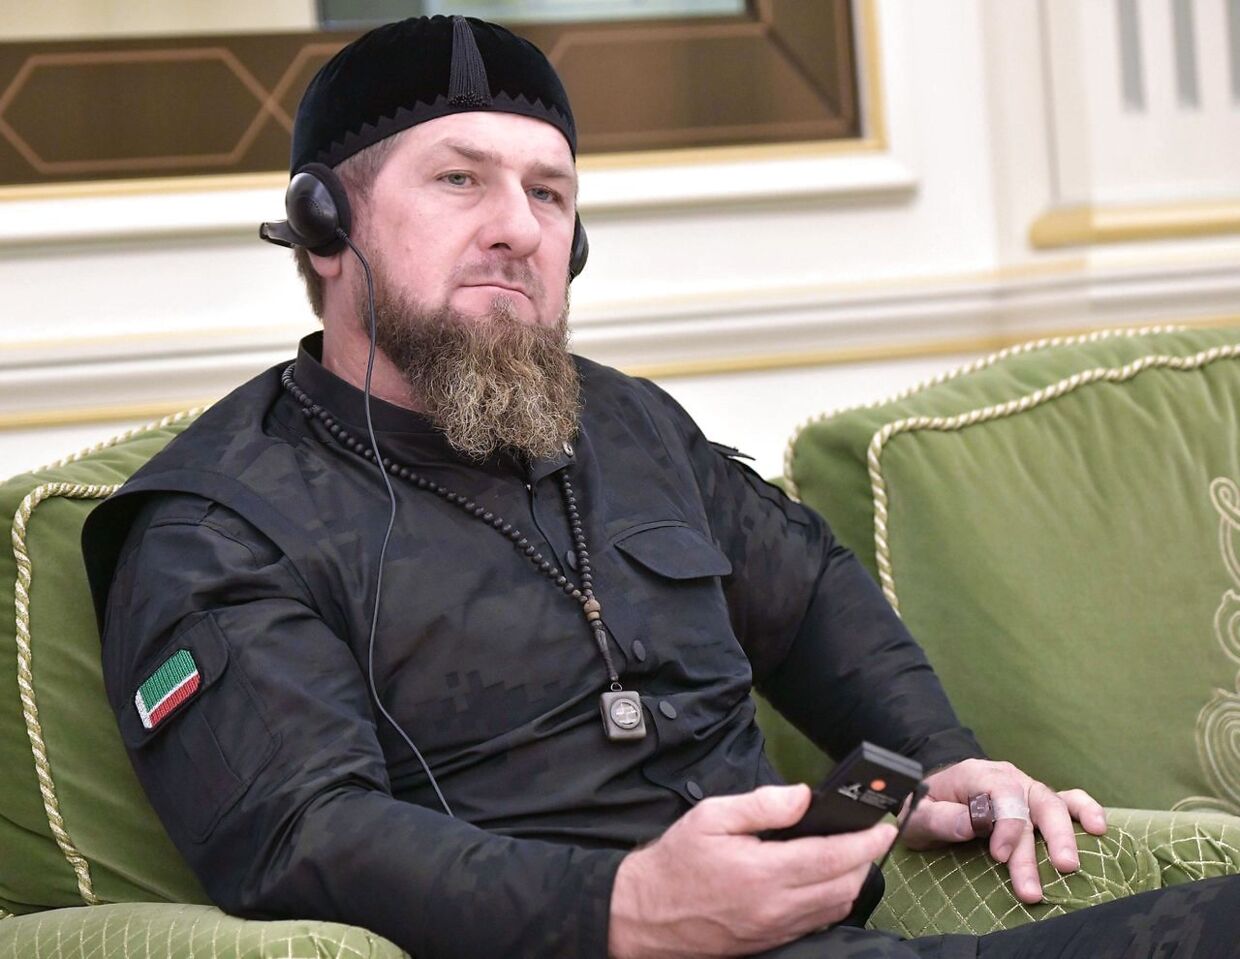 Ranzab Kadyrov truer dagligt den ukrainske præsident Zelenskyj i disse dage. Den tjetjenske leder er en brutal karakter, der i mange år har prøvet at skabe et sympatisk ydre.